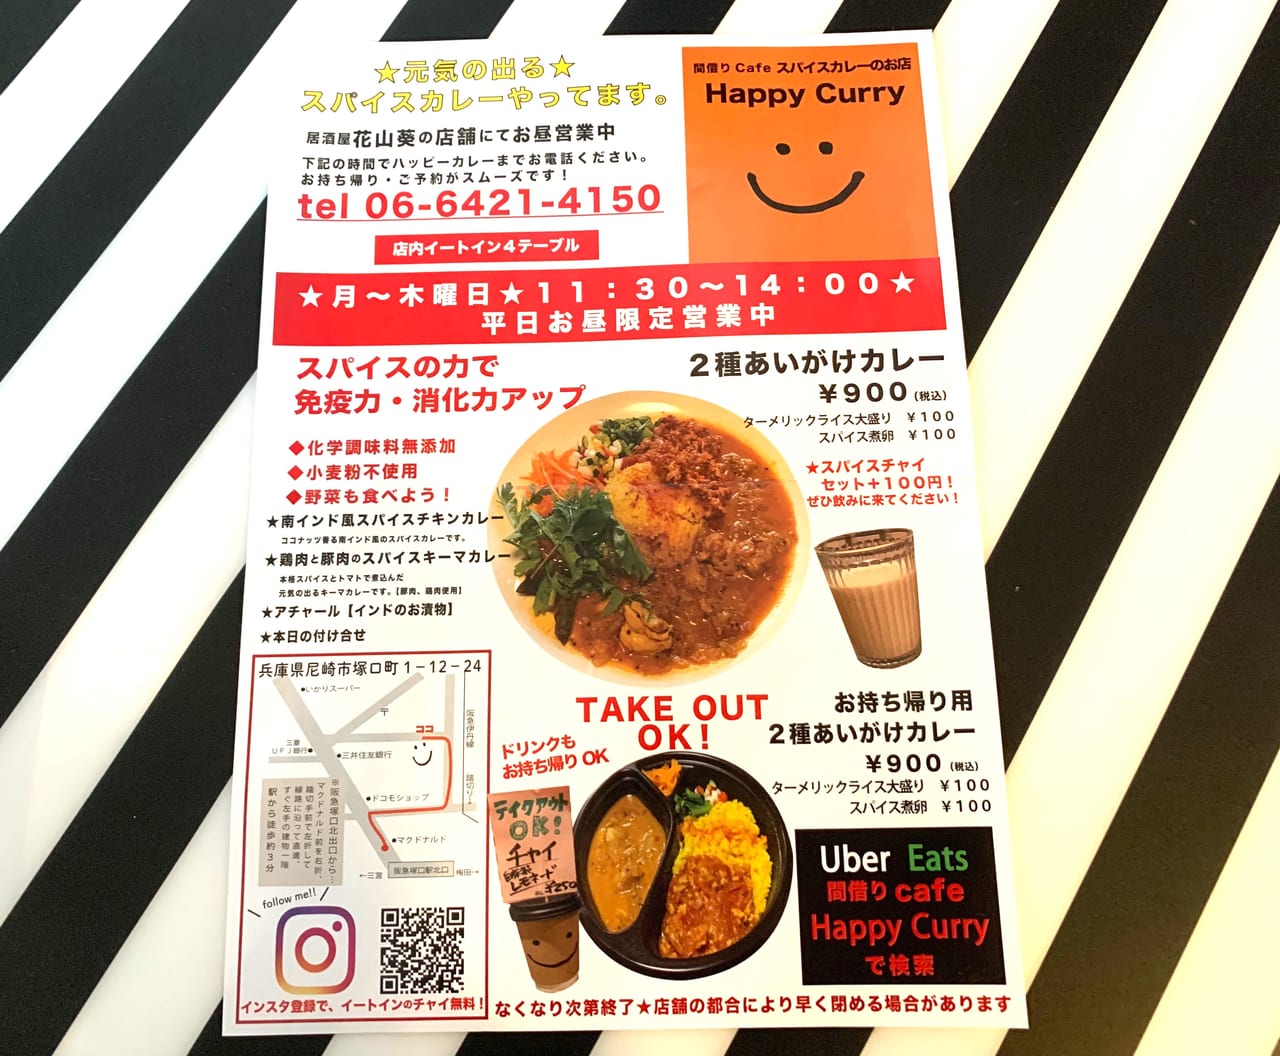 尼崎市 阪急塚口駅近くに いま話題の間借りカフェ Happy Curry ができていました お昼のみ営業のスパイスカレーのお店です 号外net 尼崎市